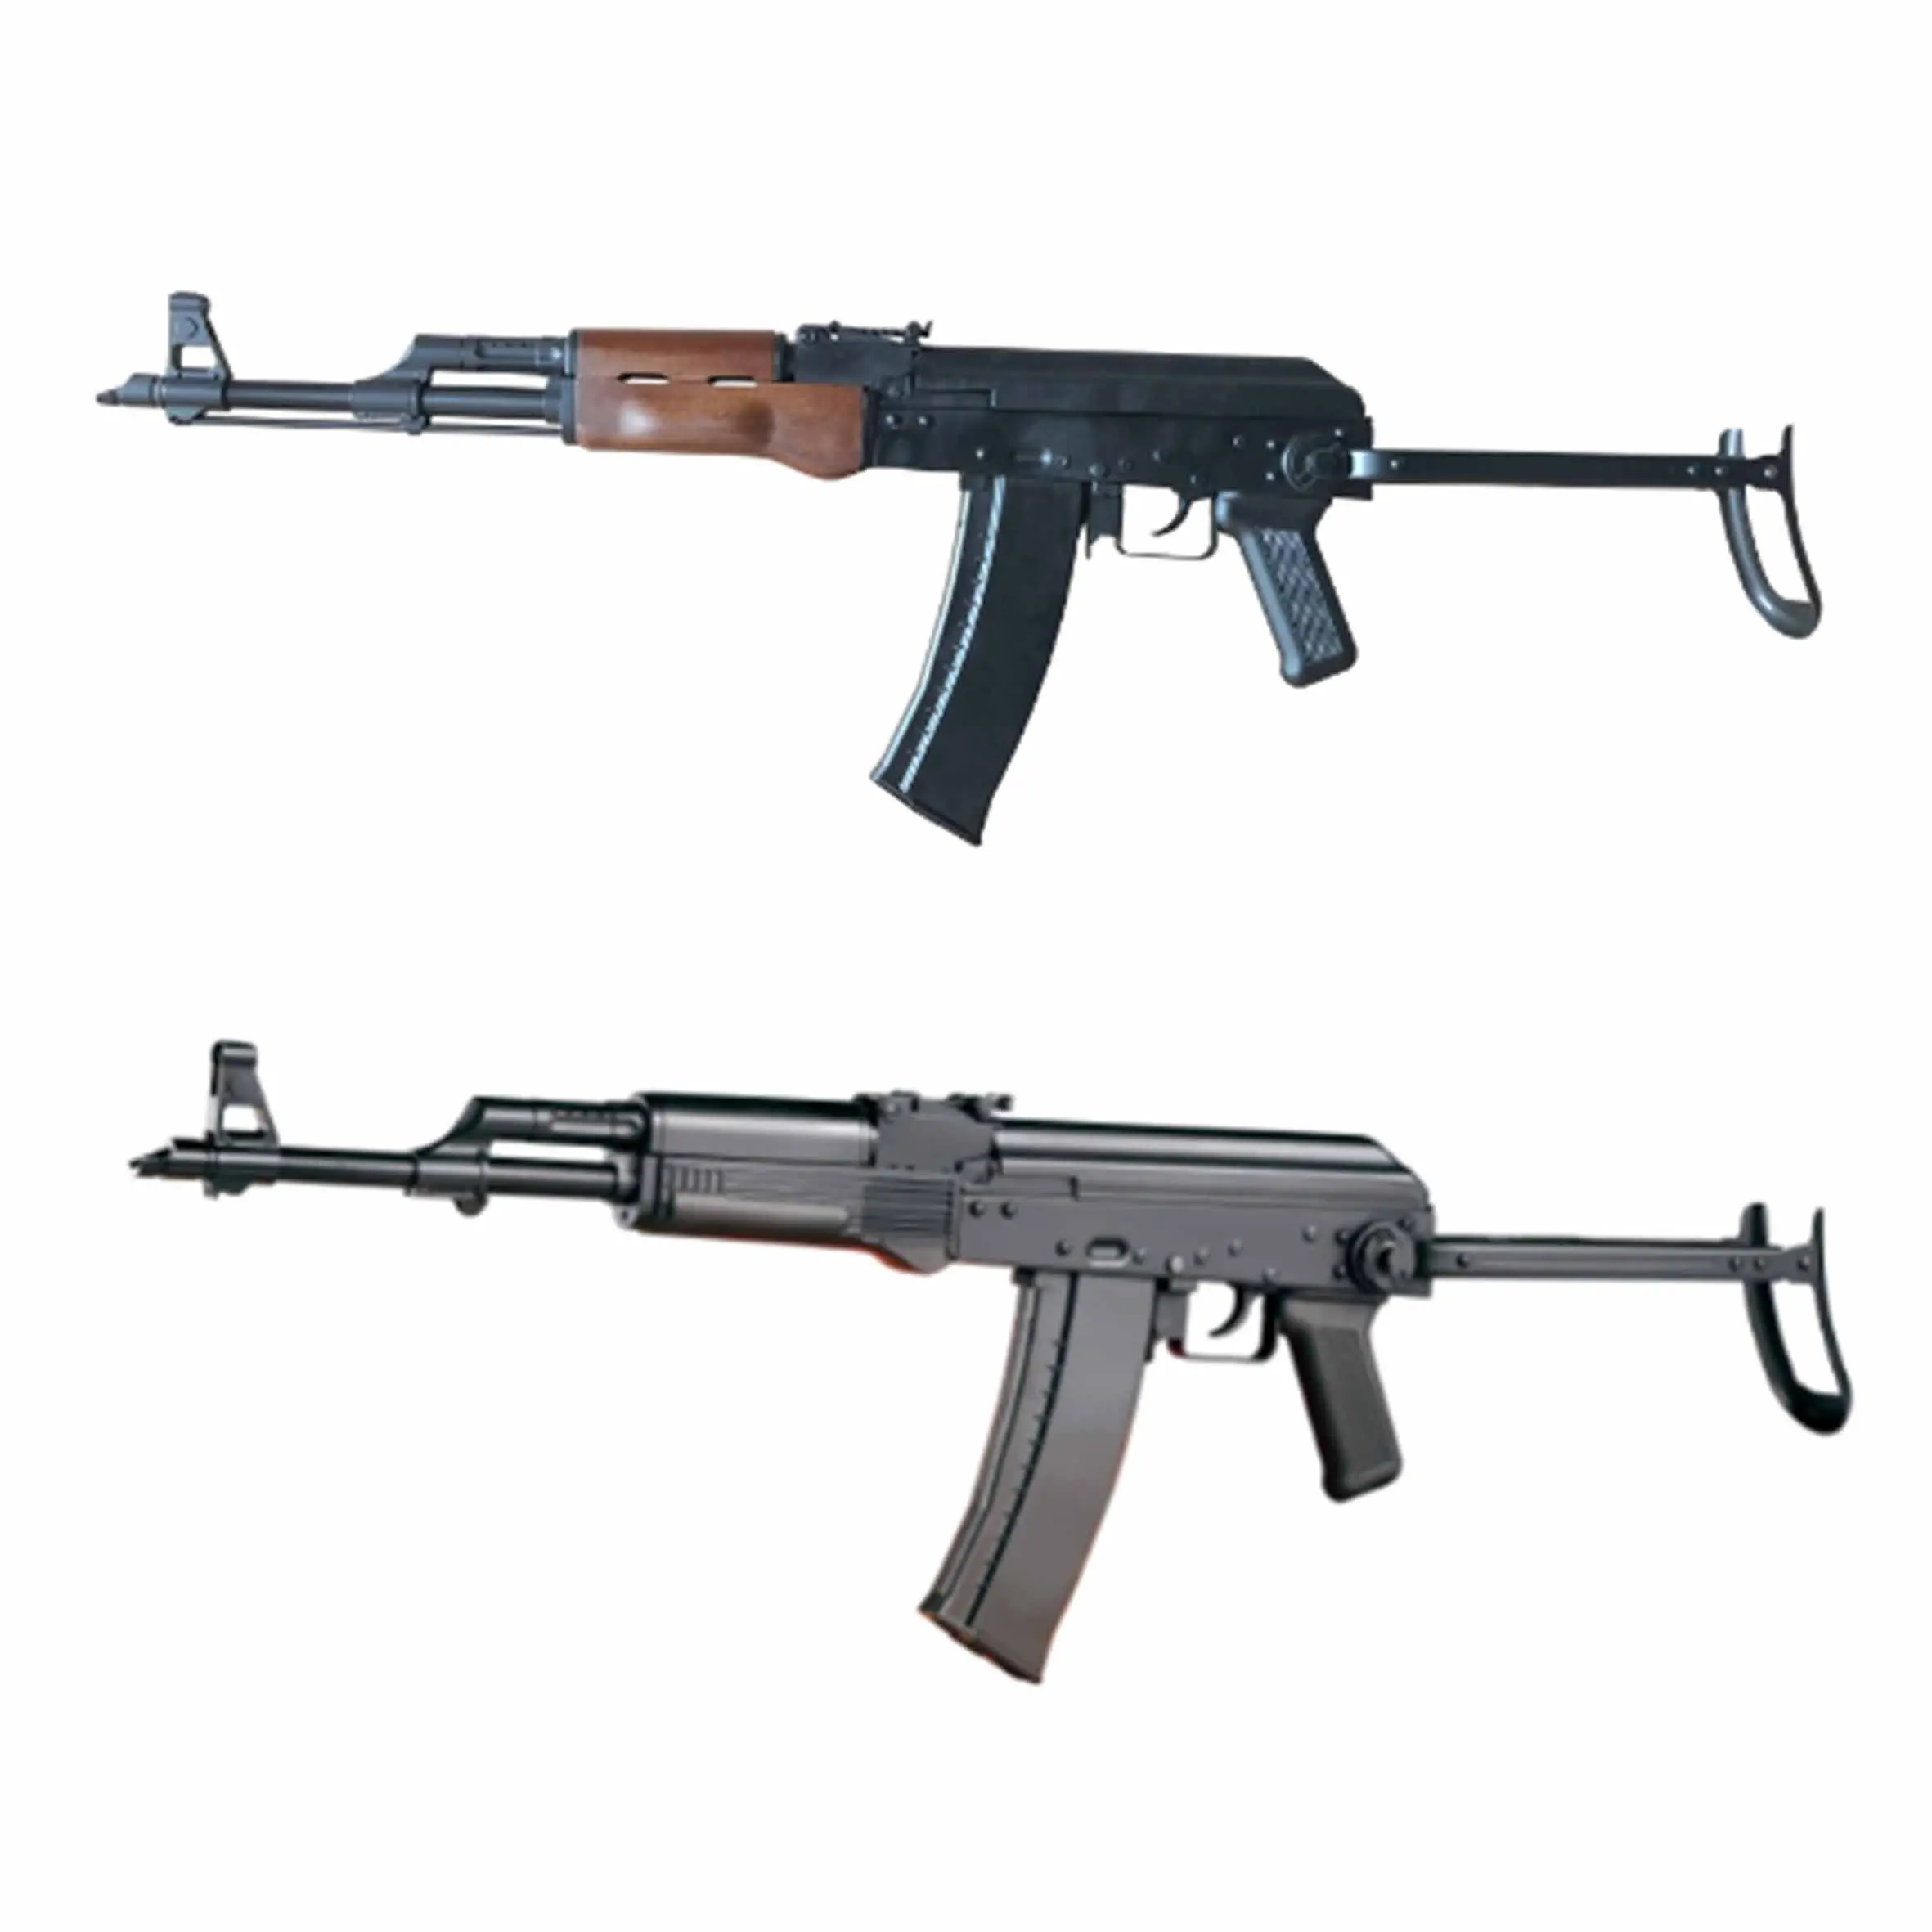 वेल प्रो AK47 खिलौने बंदूक G74C CO2 और गैस खिलौने बंदूक युद्ध गेम रिकॉइल सबसे अधिक बिकने वाला शेल इजेक्शन सॉफ्ट बुलेट गन स्पोर्ट्स एक्सक्लूसिव